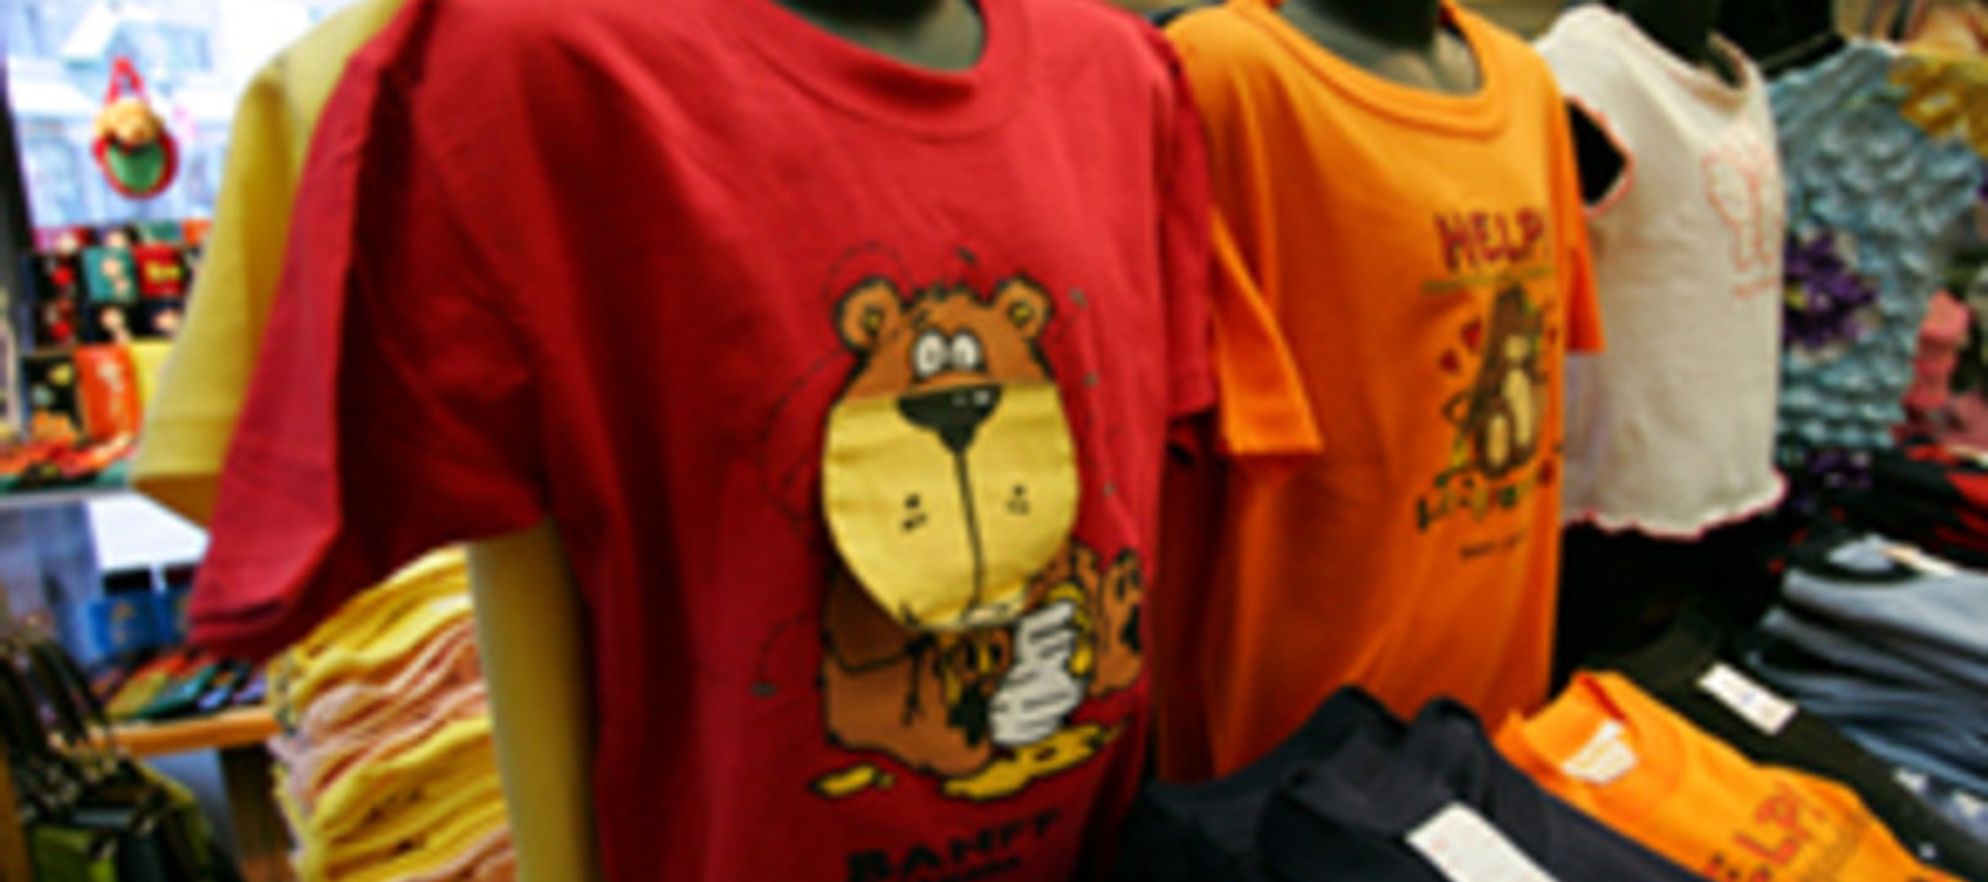 Bear In Mind Children Store